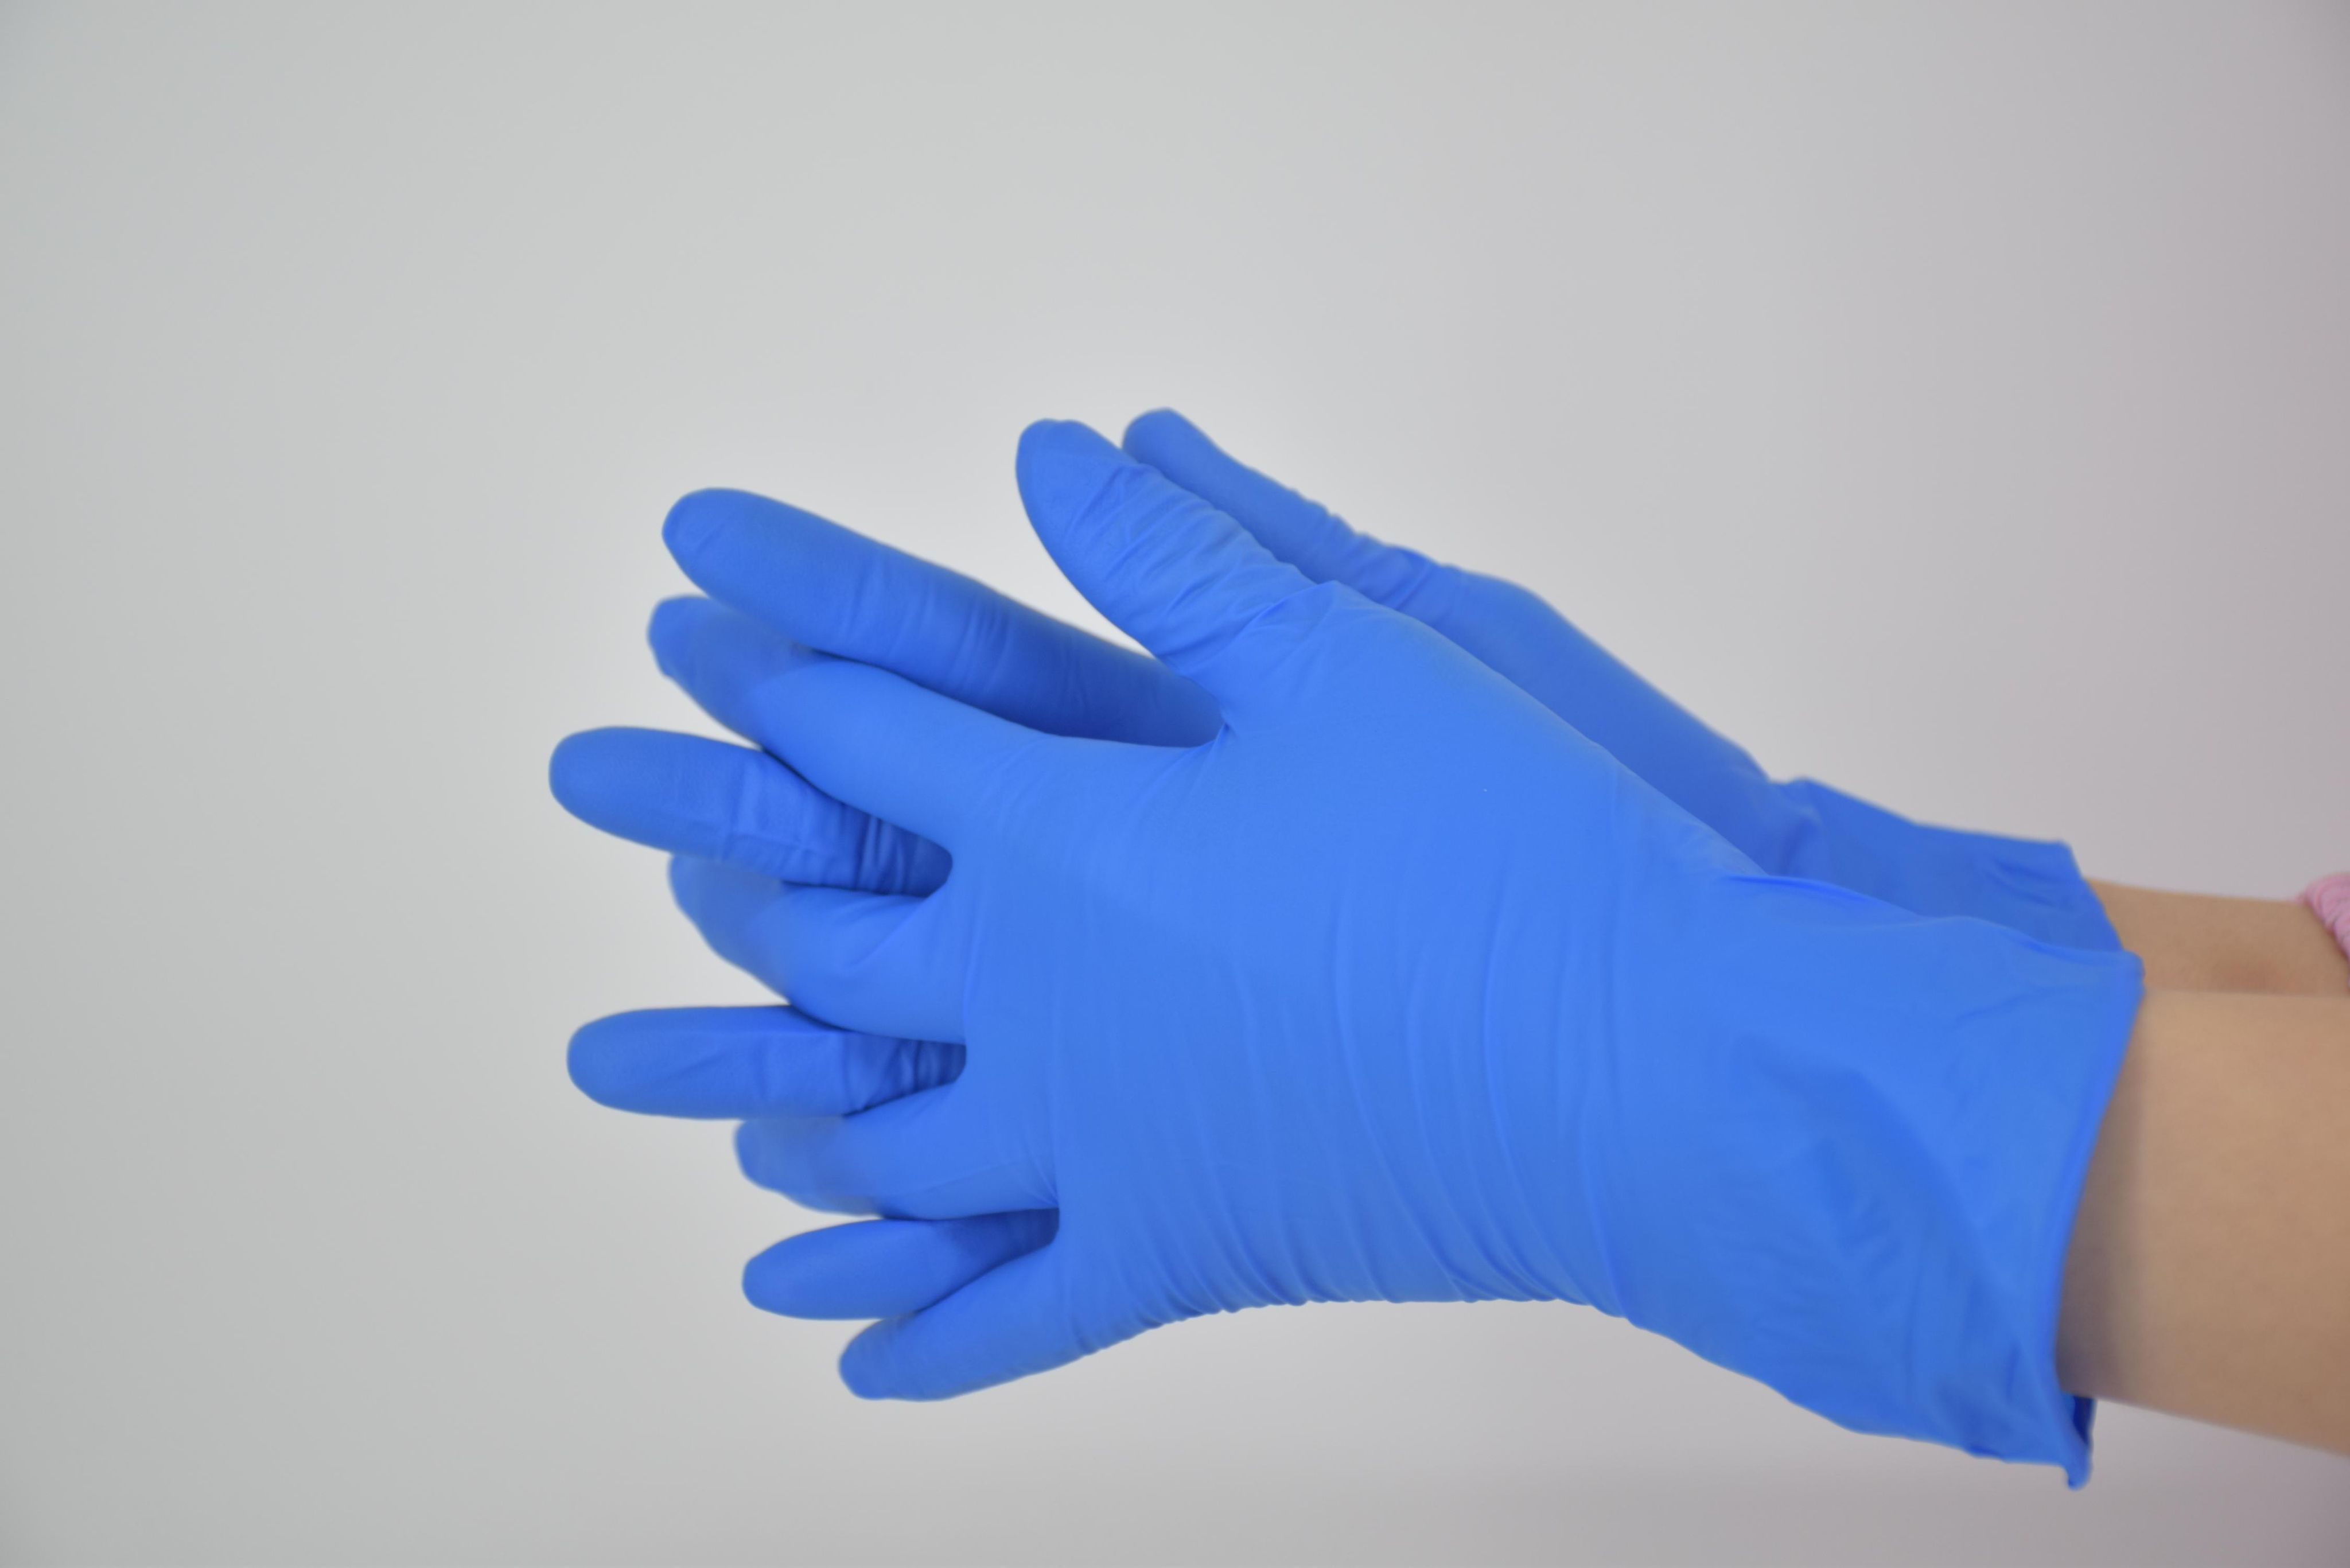 Перчатки резиновые зелёные Alphate 58-330 Ansell. Перчатки резиновые Mitra professional m. Перчатки резин (латекс) синие /50перч "l" повыш.плотности "хайриск2" (10). Длинные резиновые перчатки кислотостойкие la600. Окпд перчатки резиновые